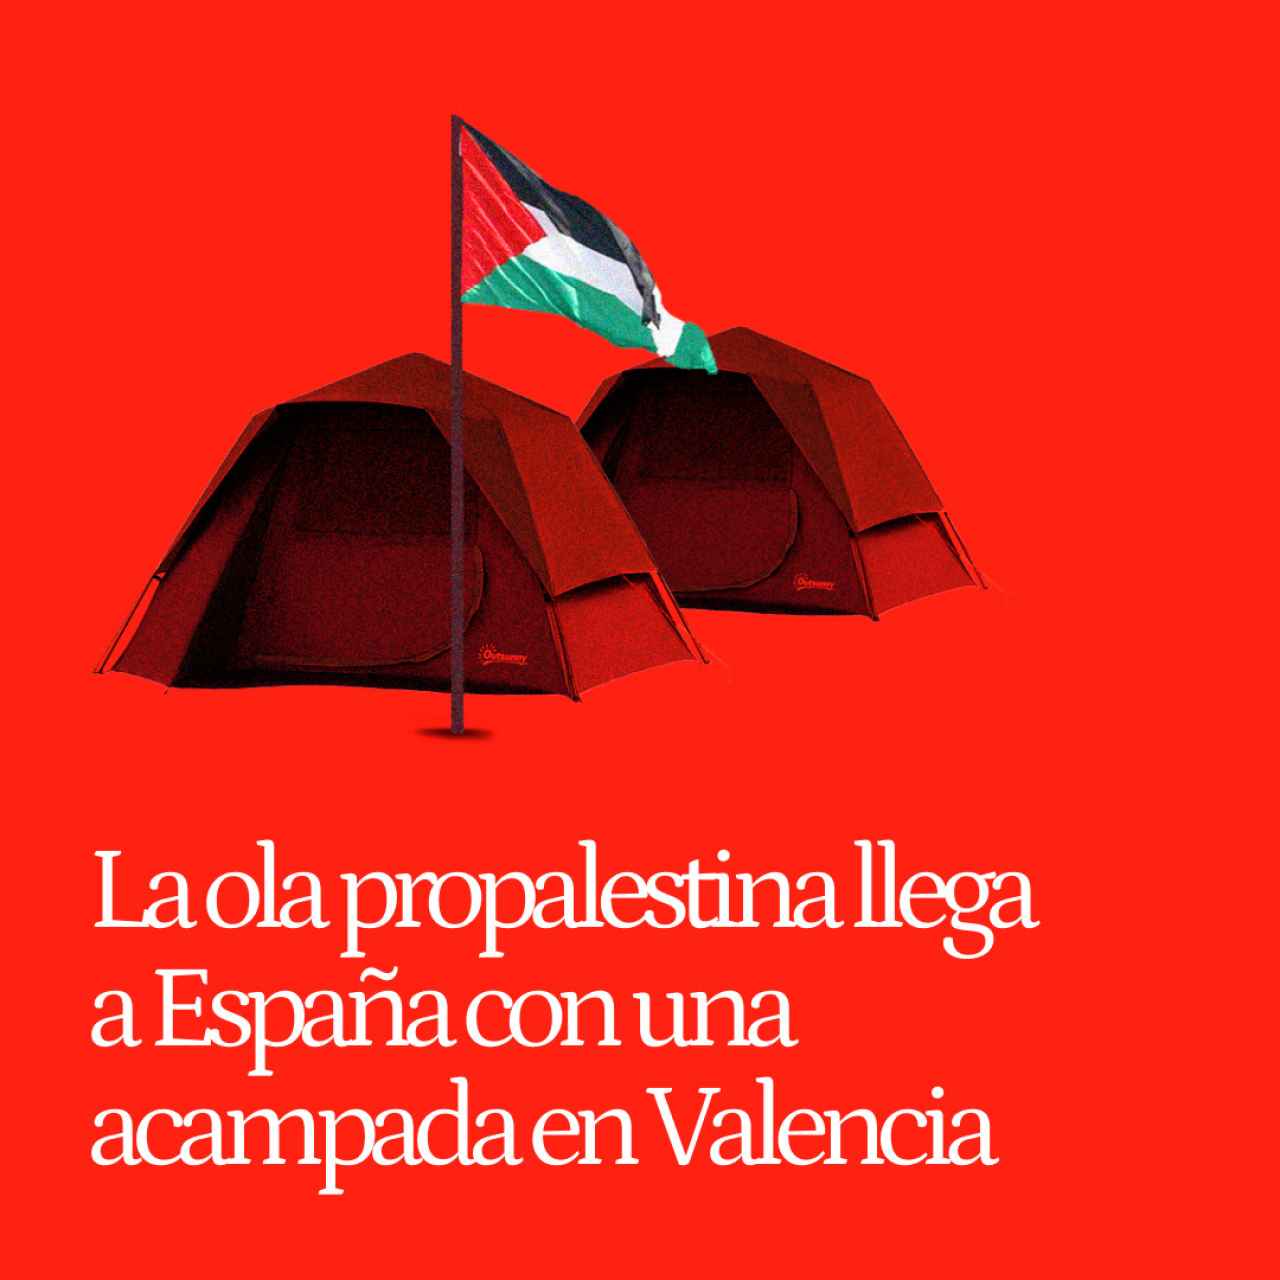 La ola propalestina llega a España con una acampada en Valencia: "Tenemos que montar lo de EEUU aquí"